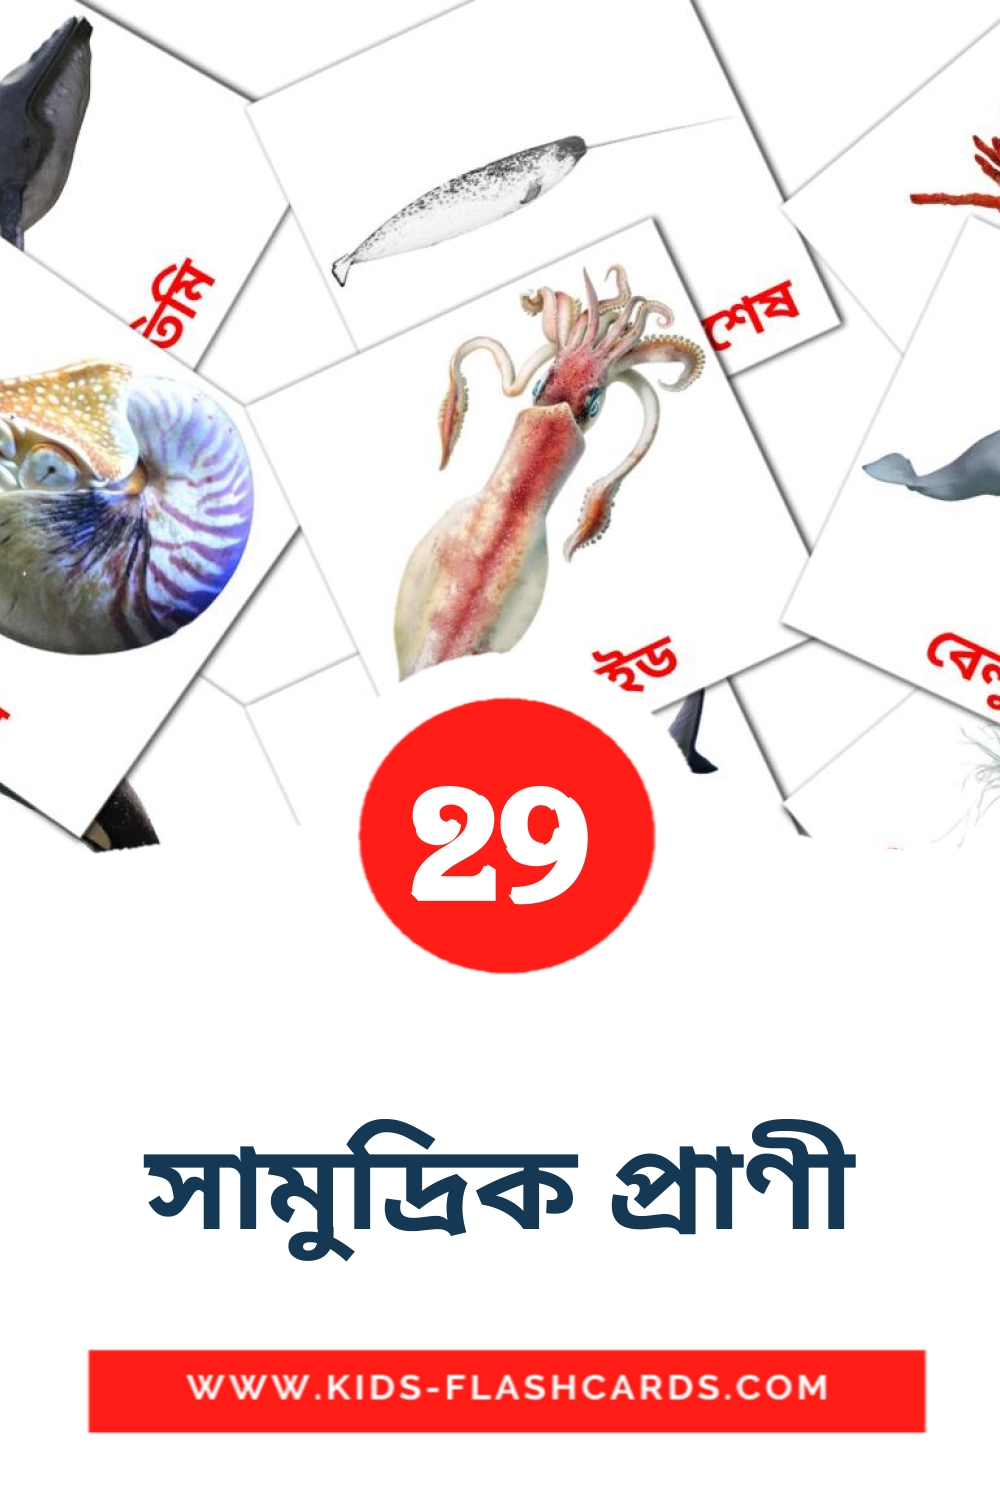 29 tarjetas didacticas de সামুদ্রিক প্রাণী para el jardín de infancia en bengalí